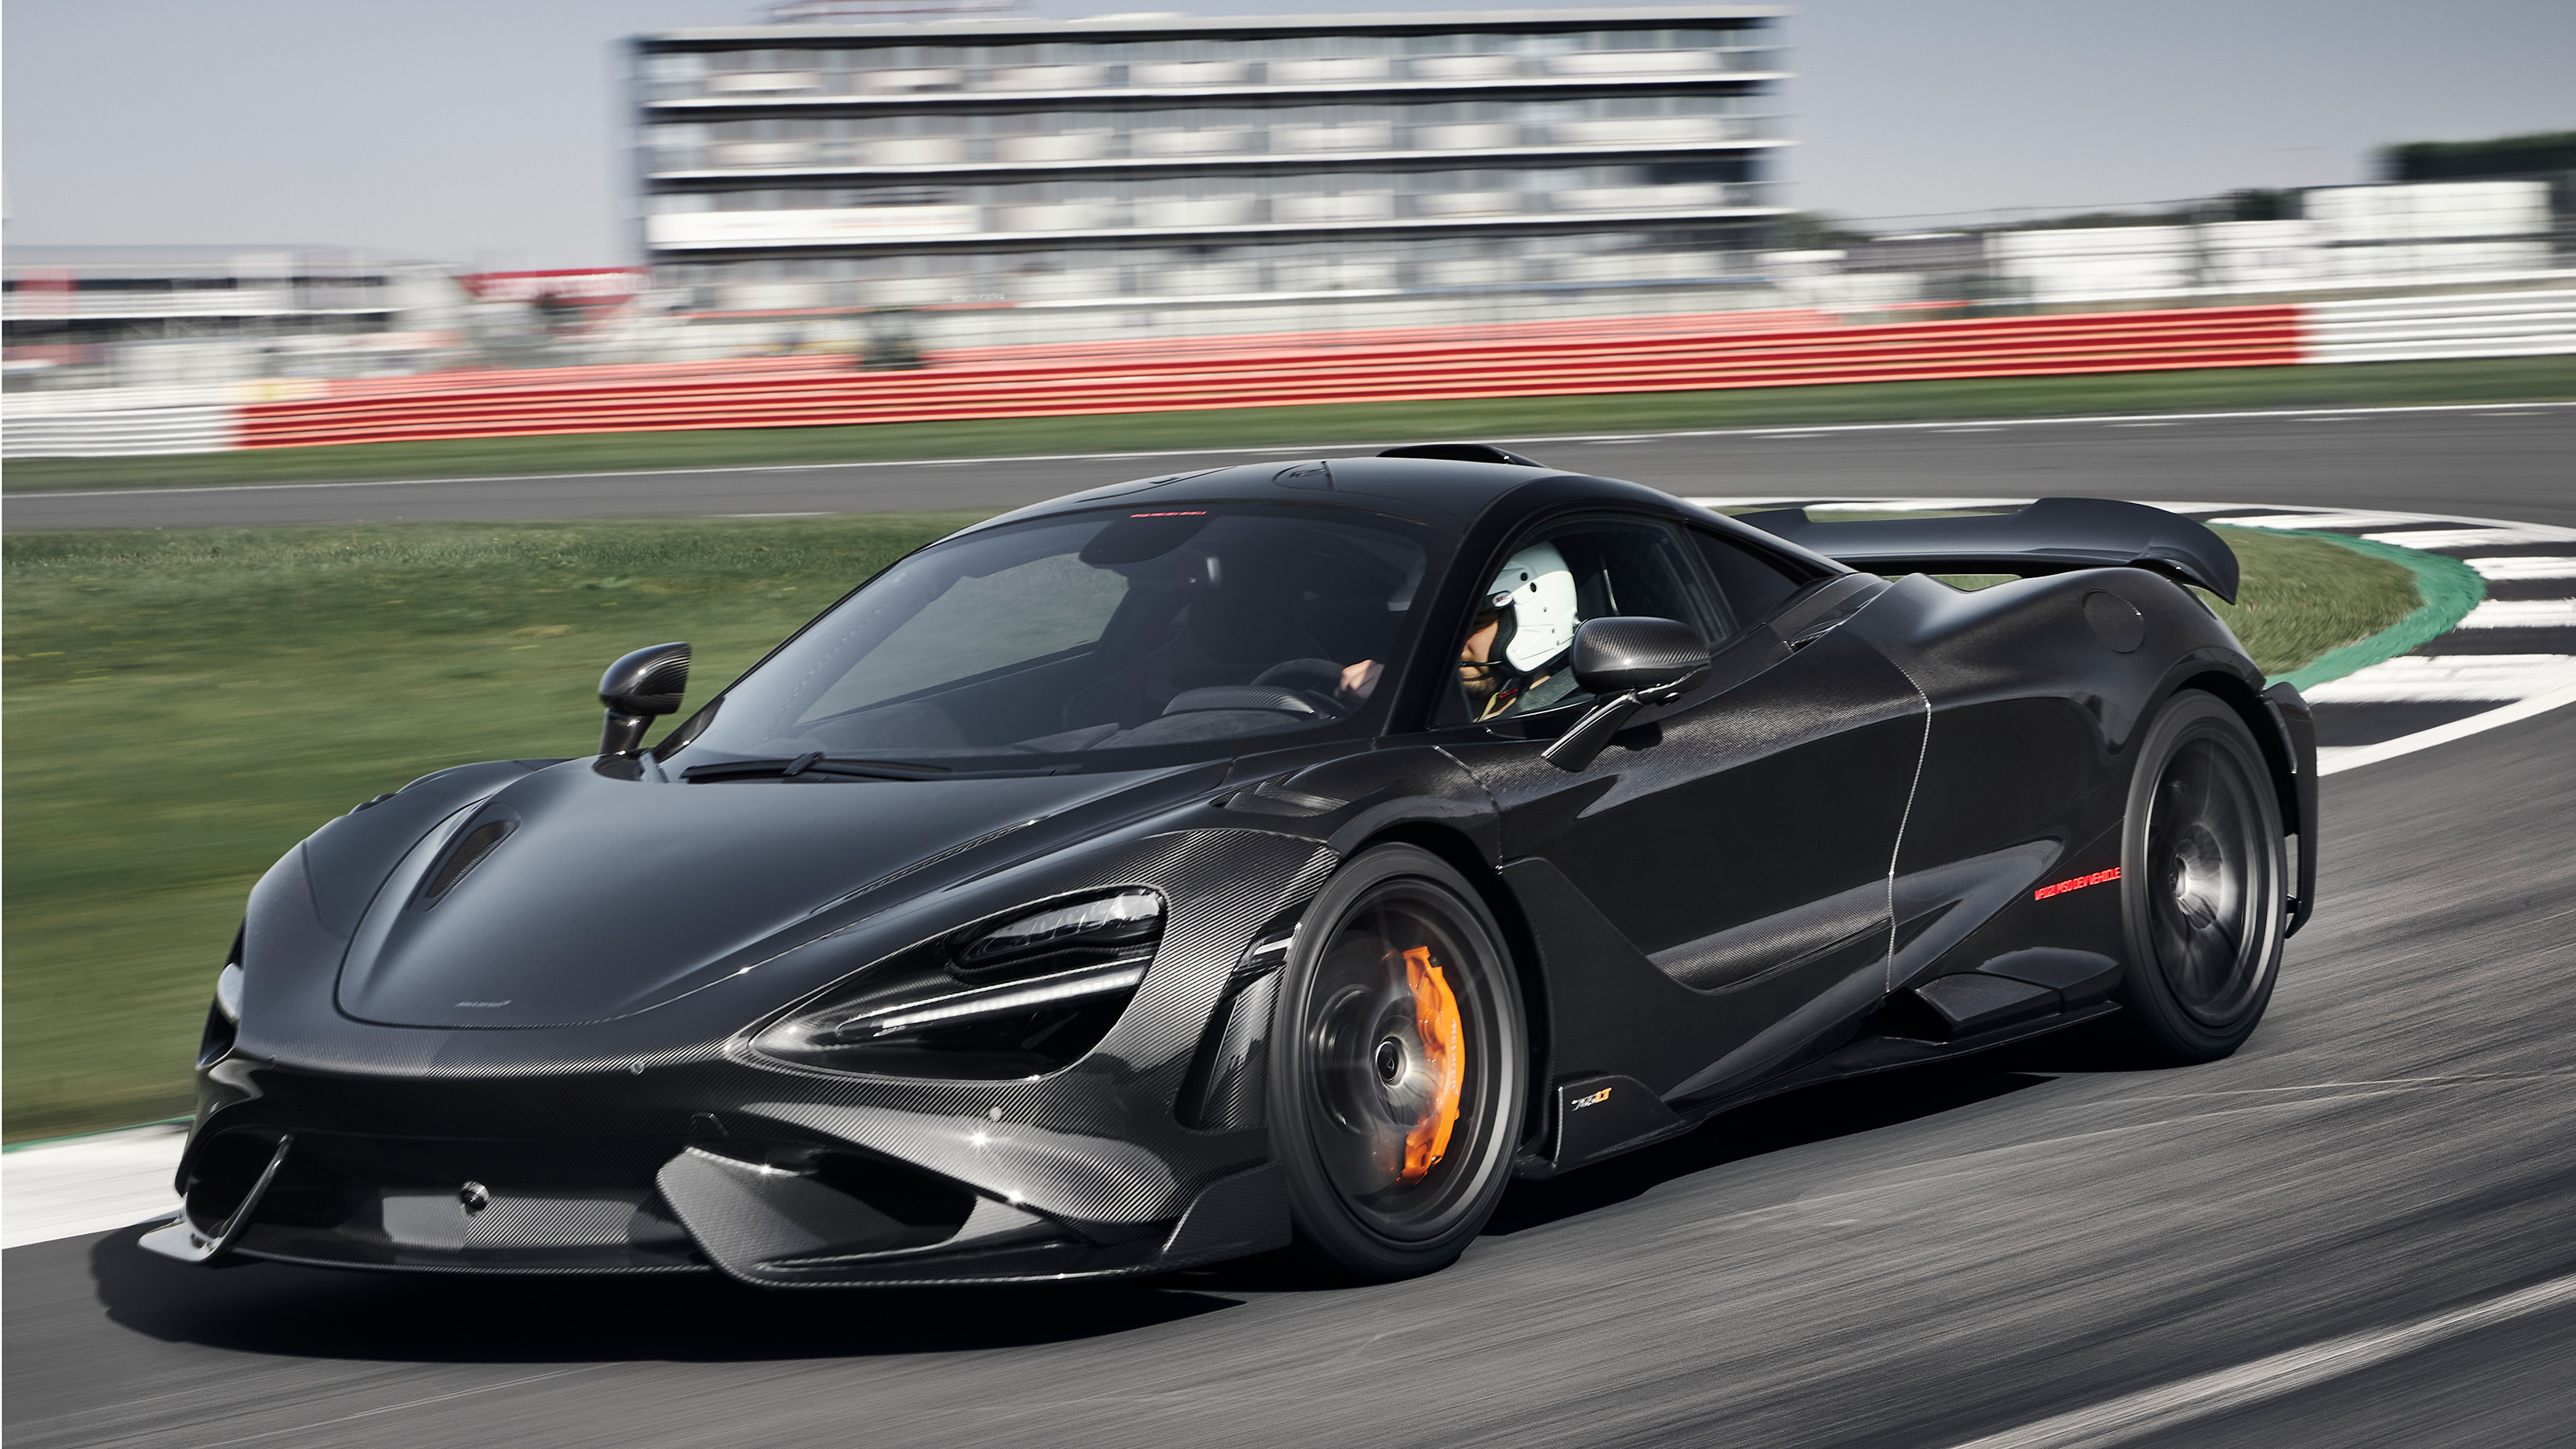 New 2020 McLaren 765LT: price and specs confirmed  Auto 